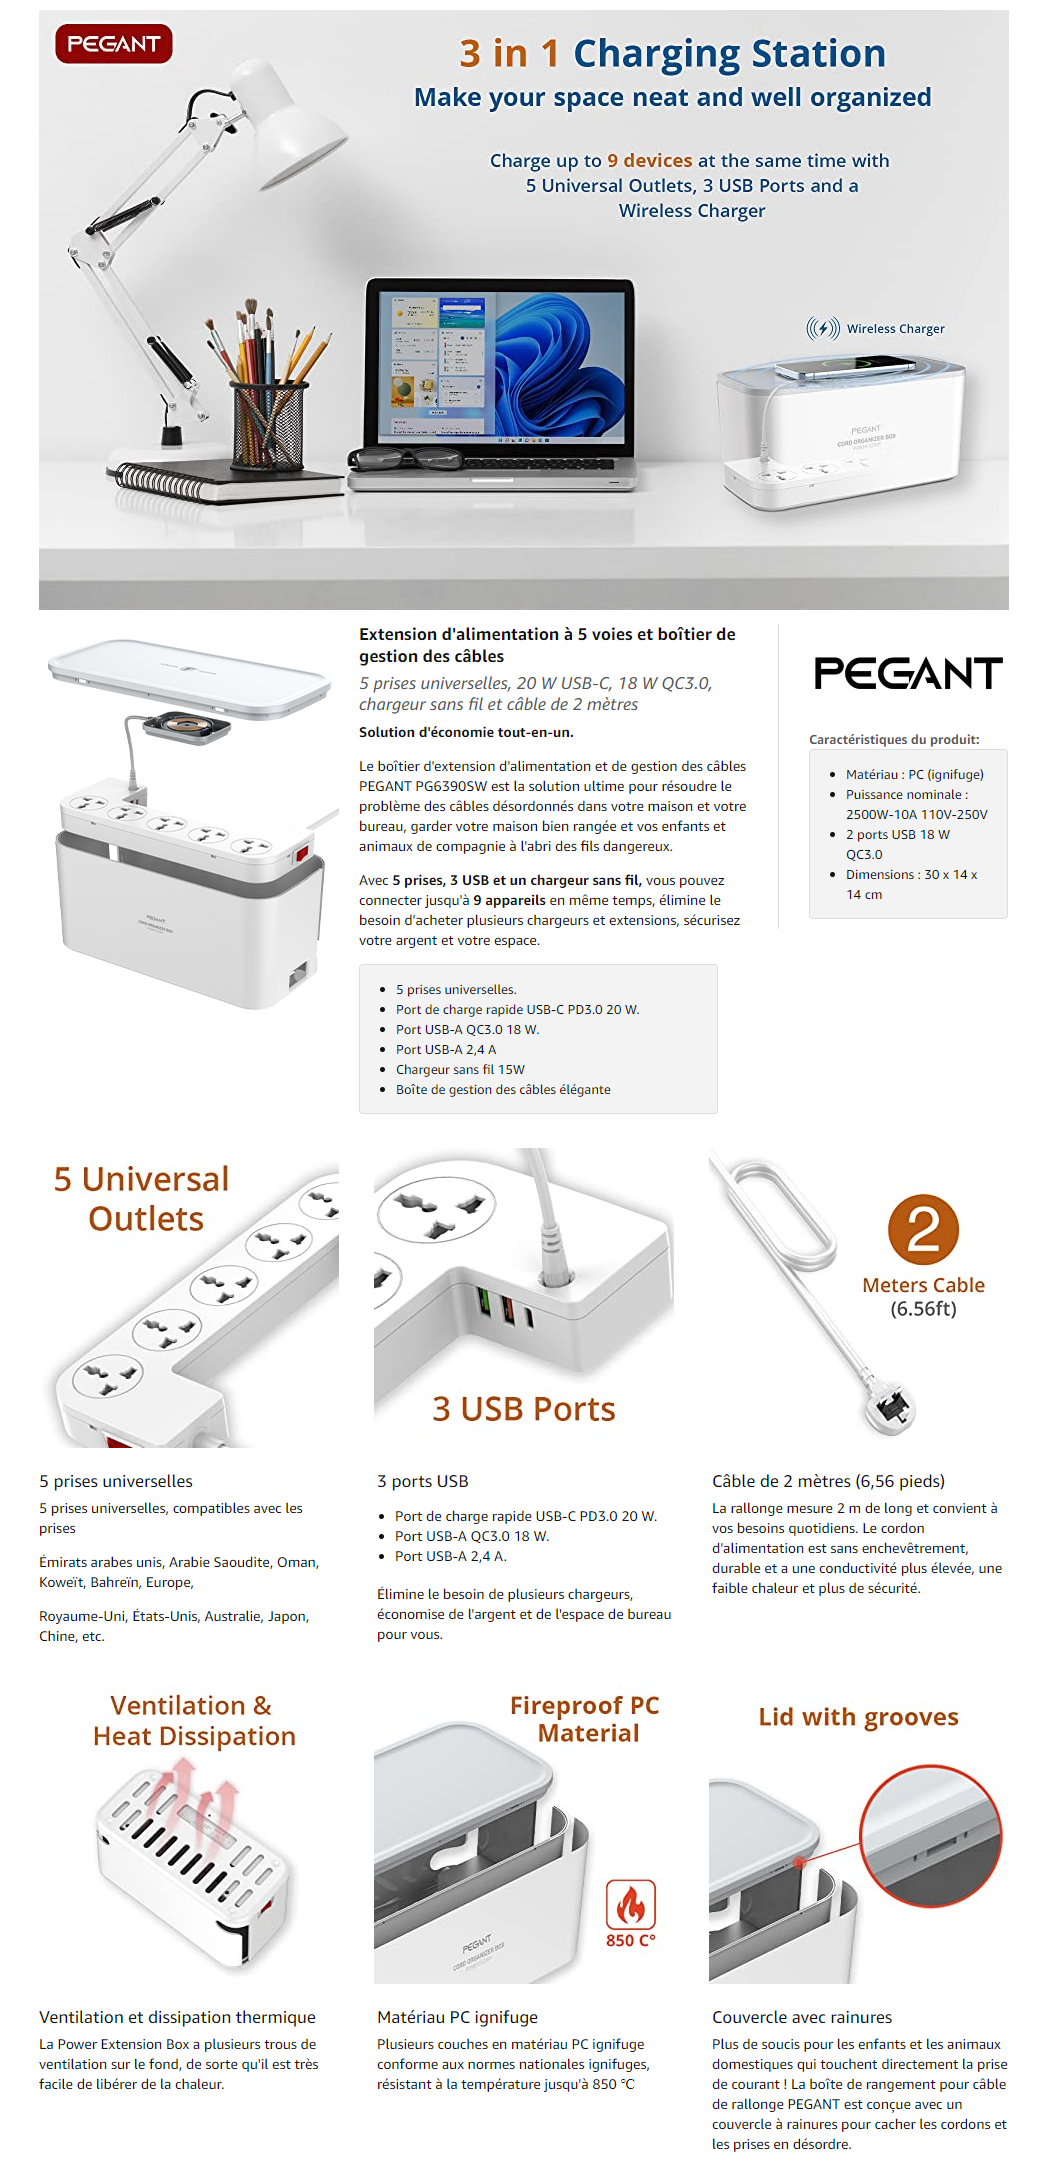 Chargeur induction universel Multi-prises avec 3 ports USB - 3 Prises